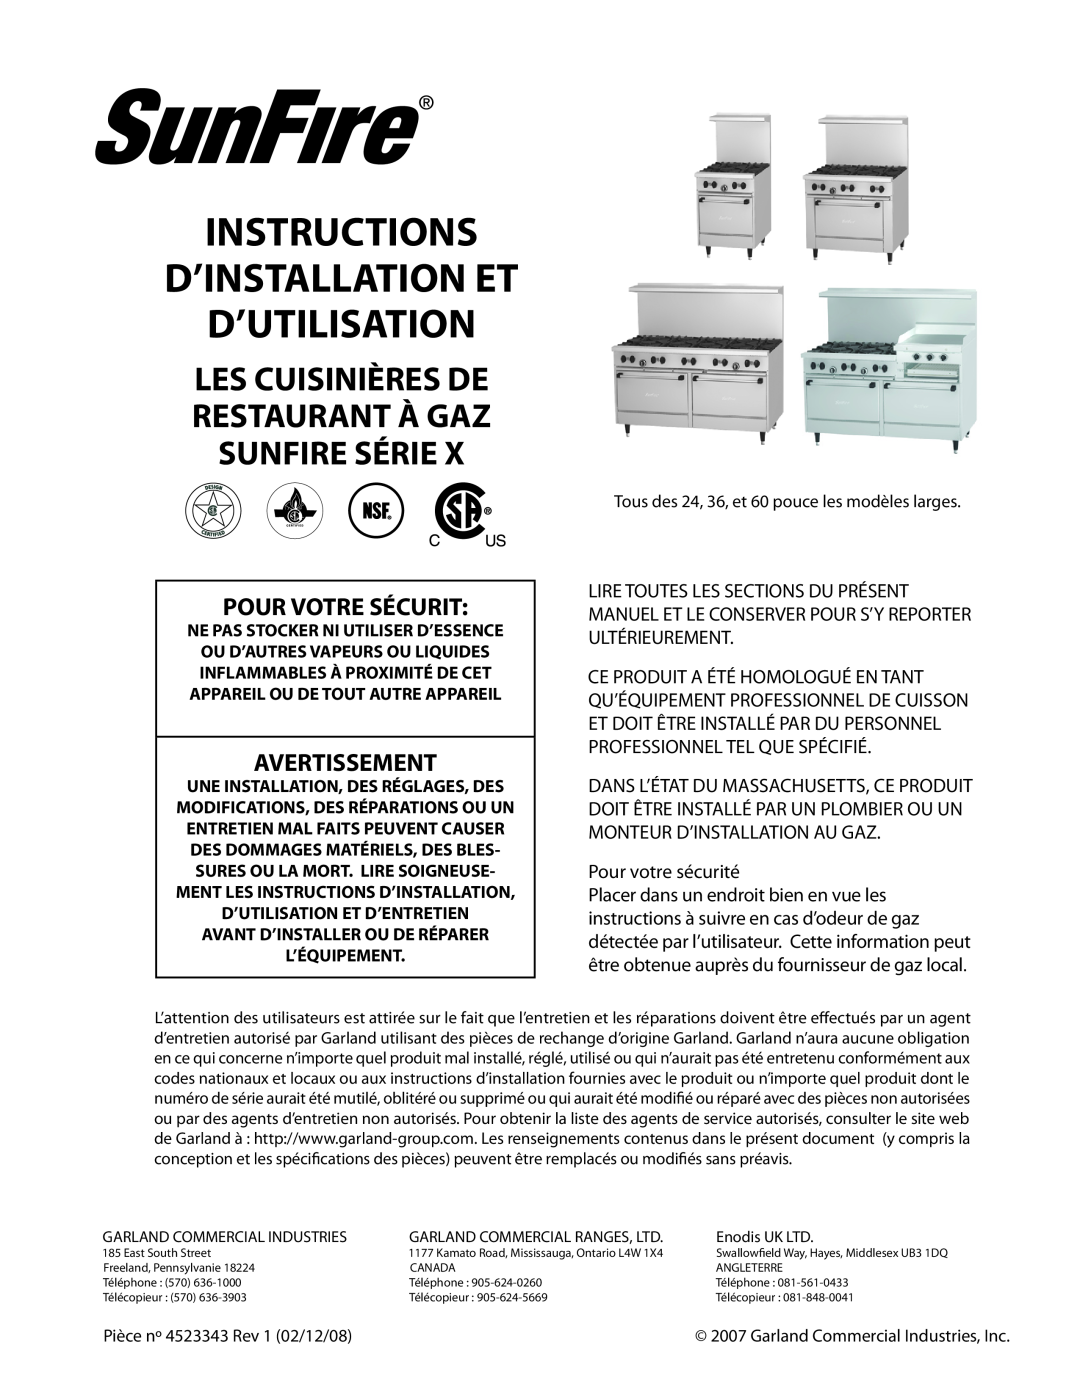 Sunfire X Series operation manual Instructions D’Installation Et D’Utilisation, Pour Votre Sécurit, Avertissement 